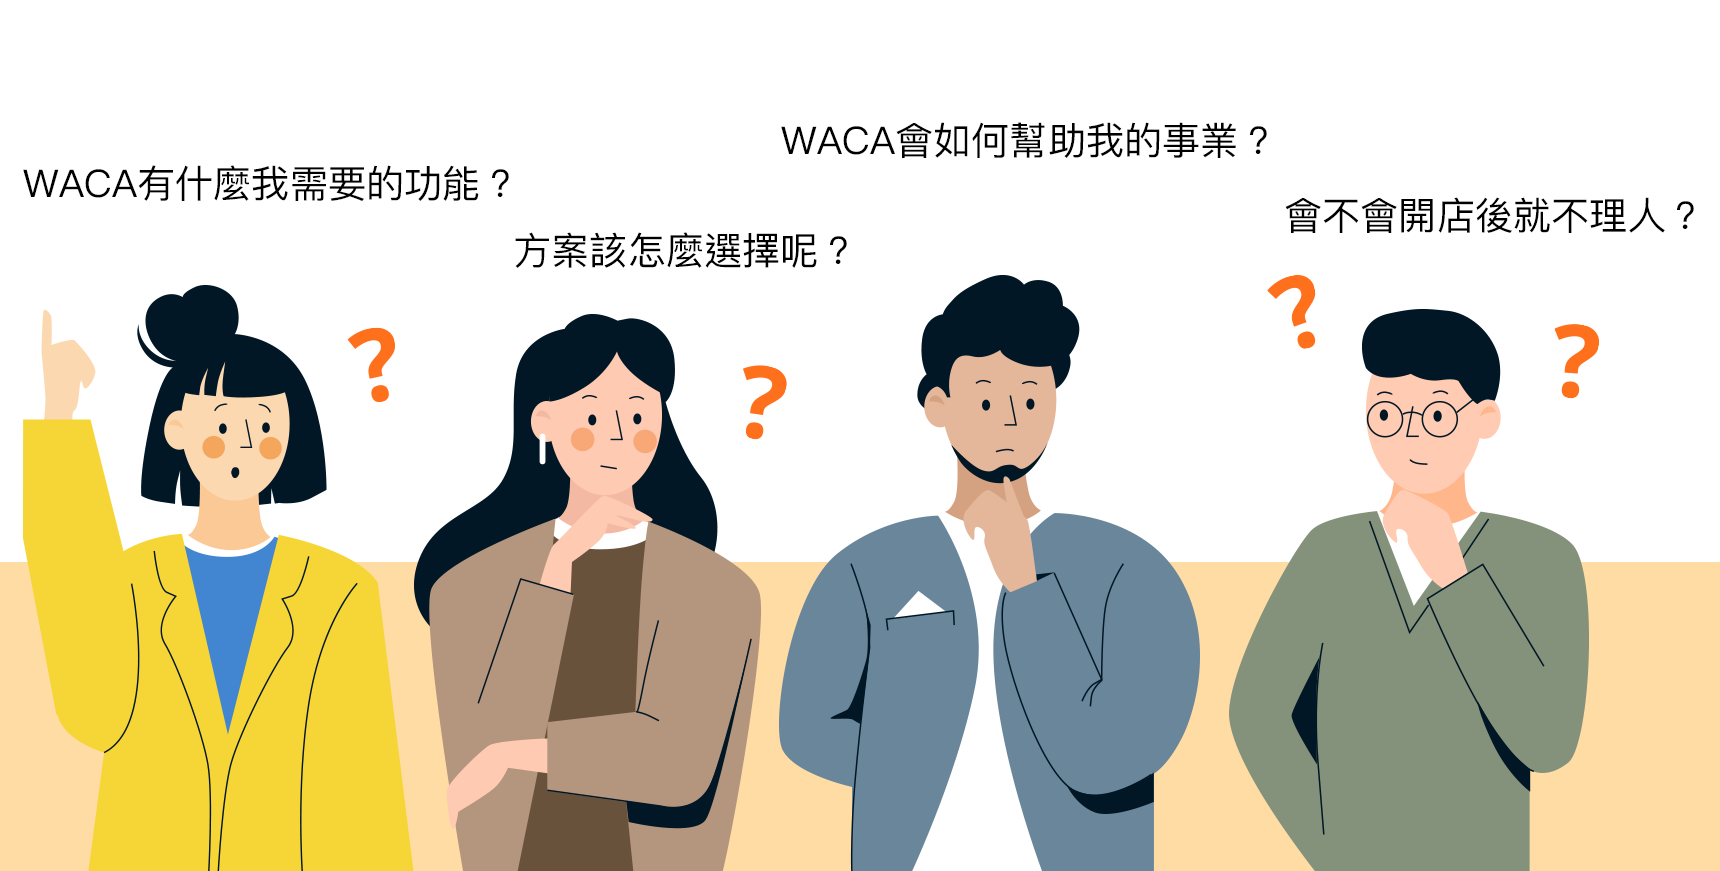 WACA 是你的電商夥伴